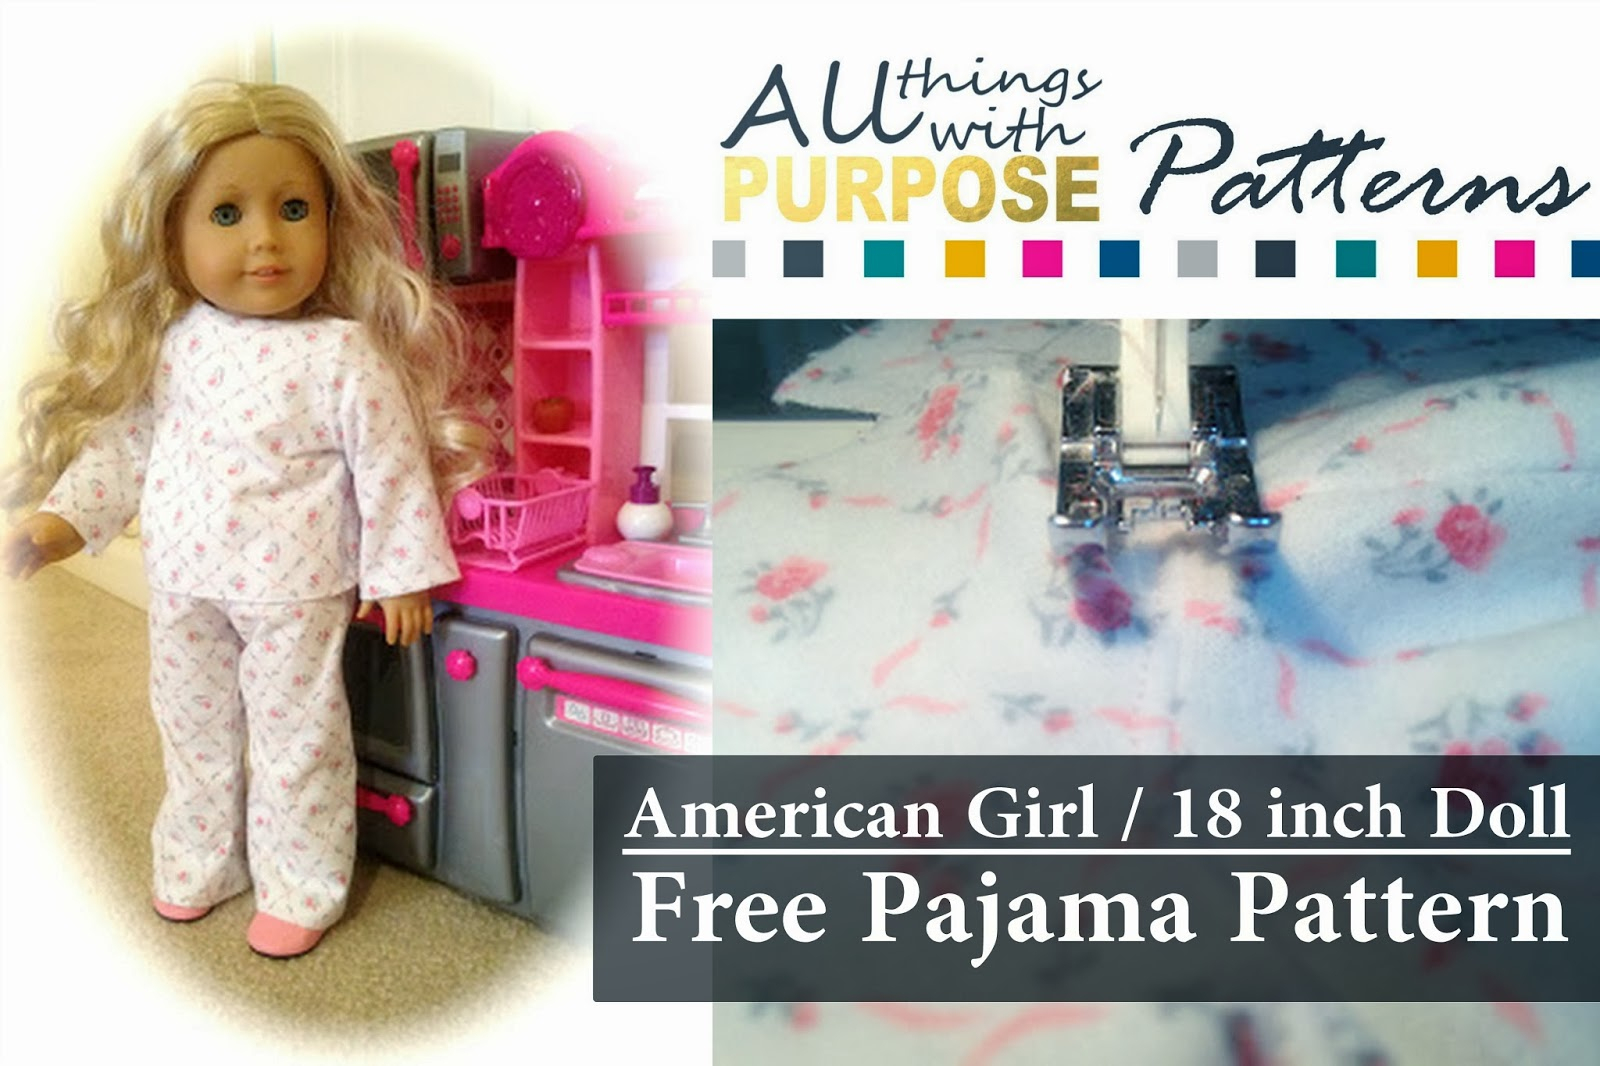 American Girl Doll Free Pajamas Pattern - American Girl Doll Clothes Patterns Free Printable